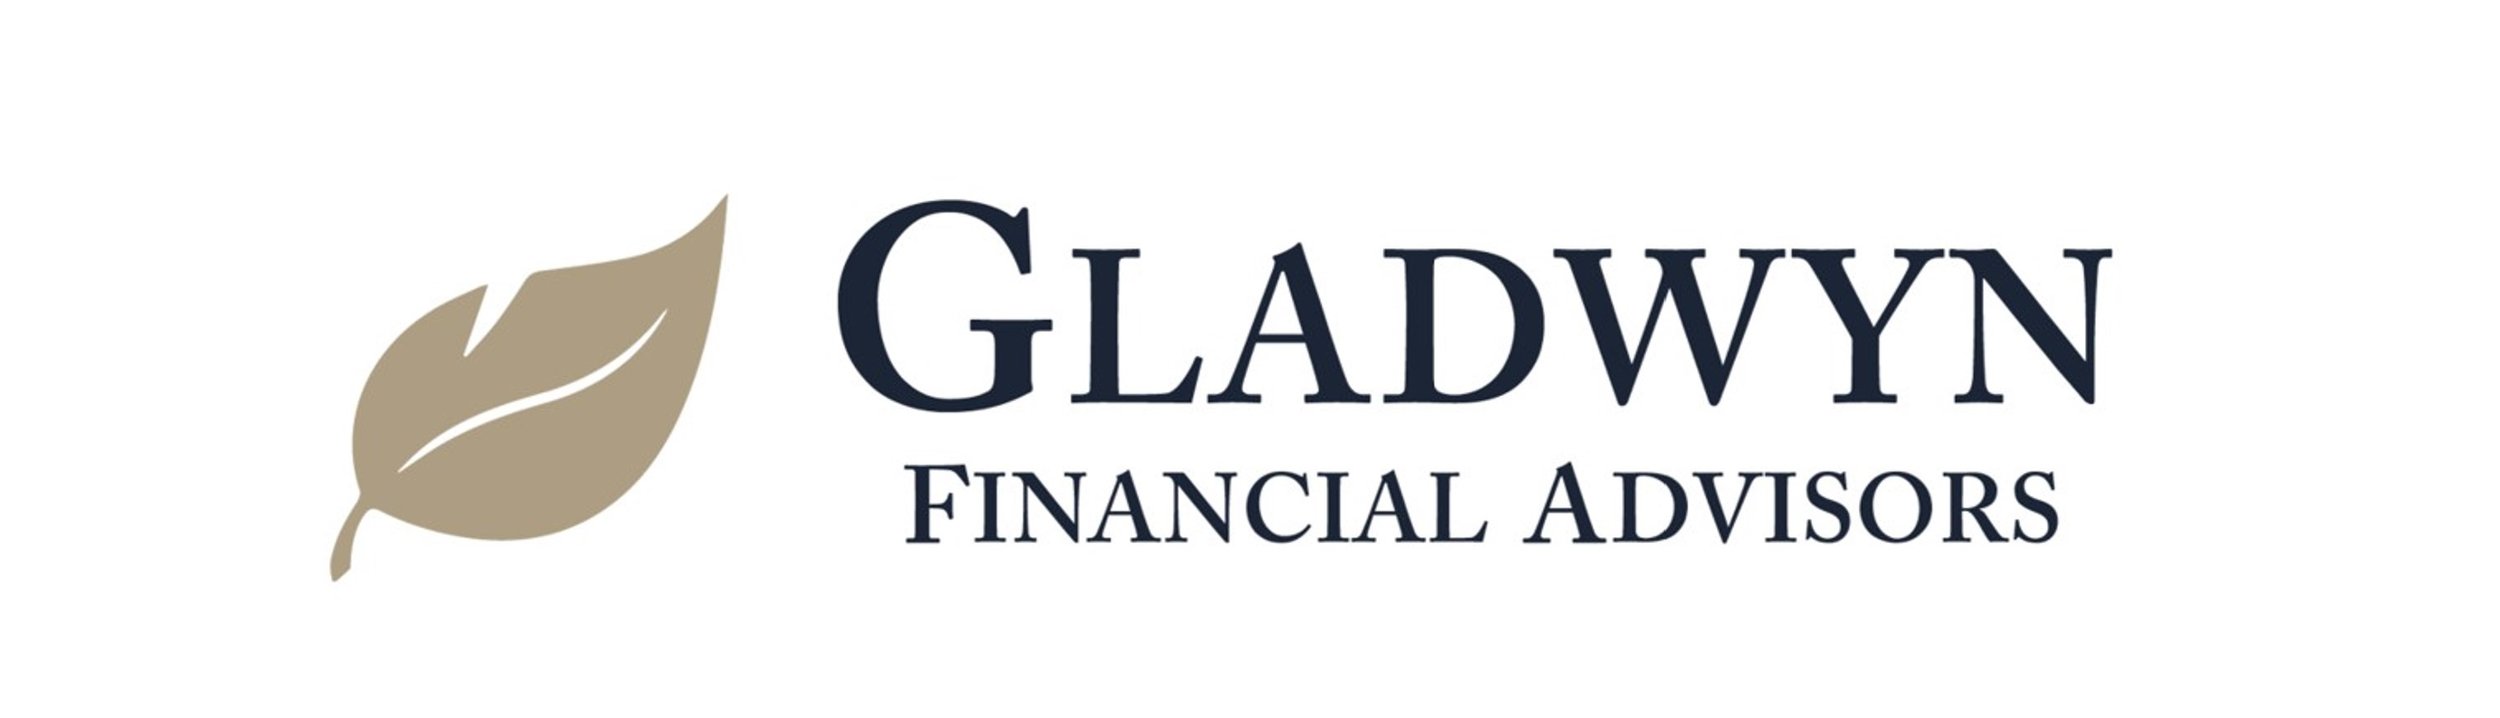 Gladwyn Financial Advisors